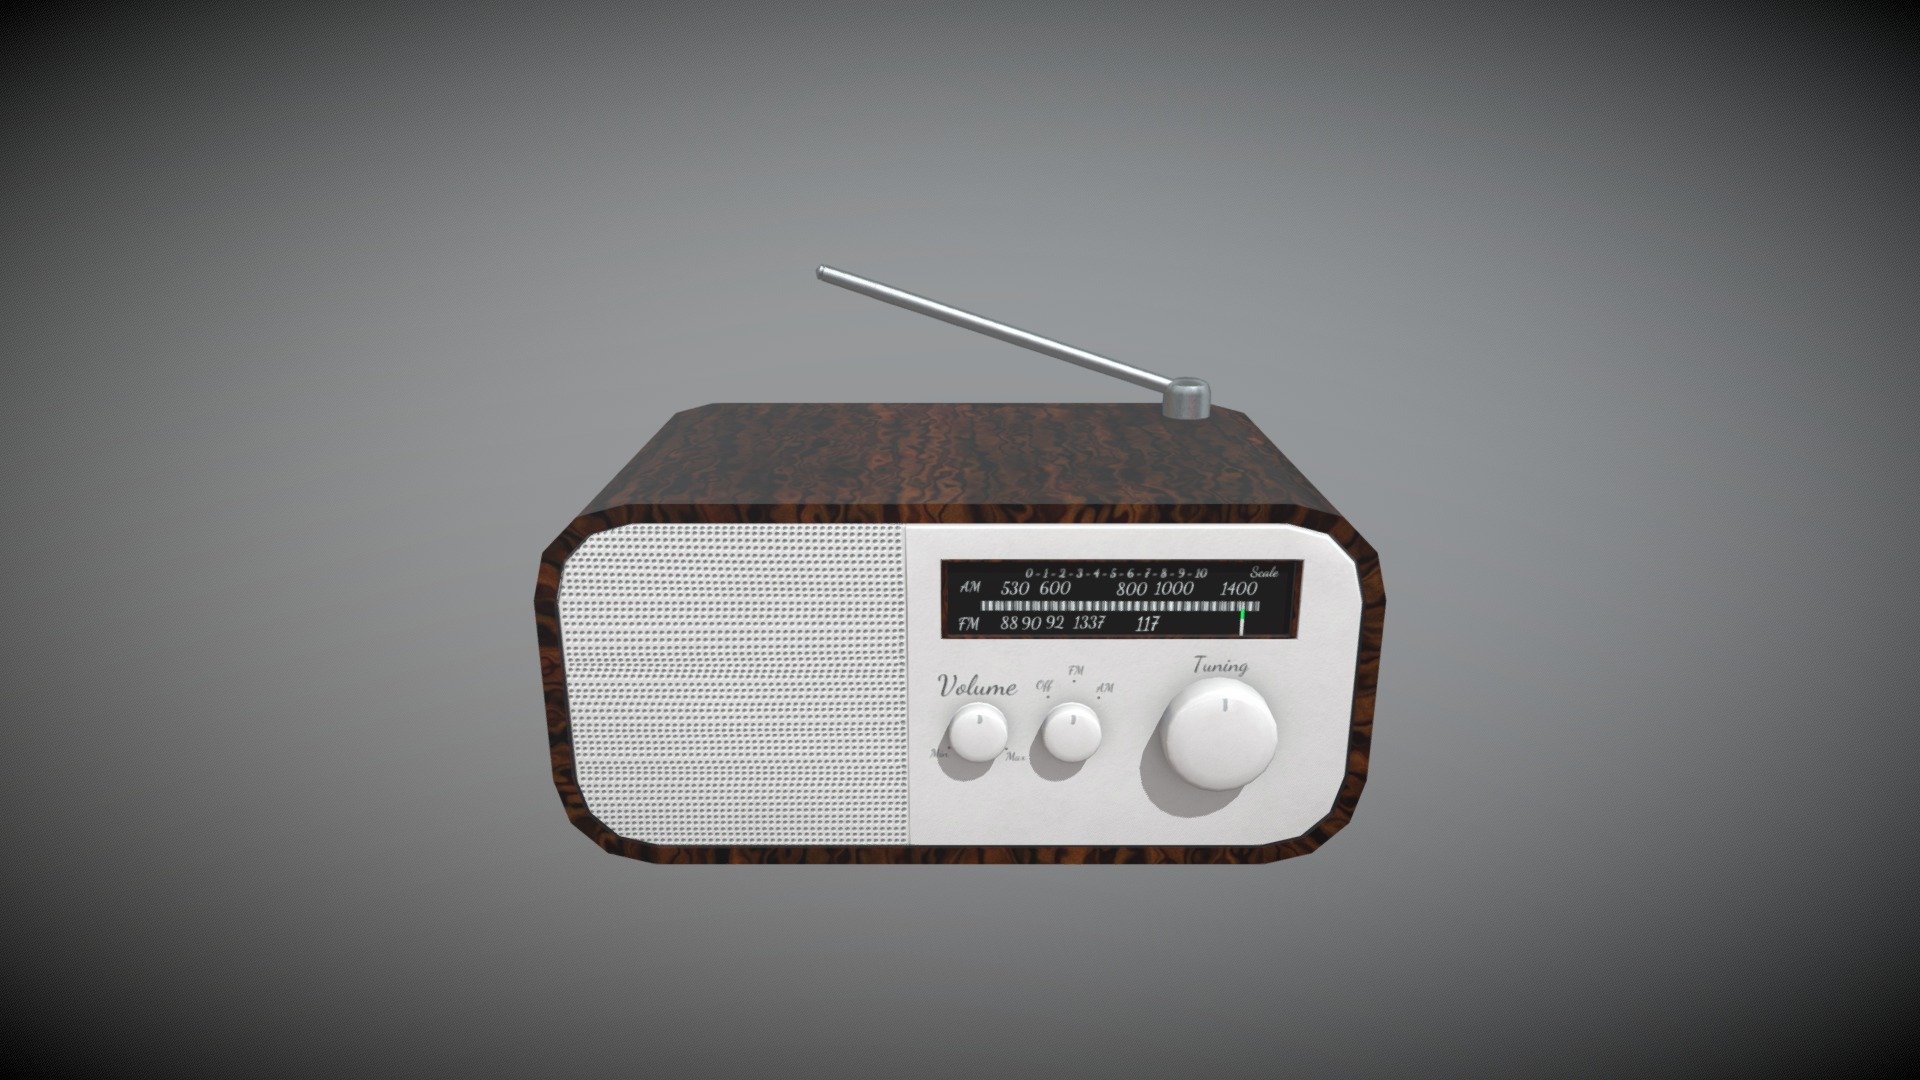 70s Radio